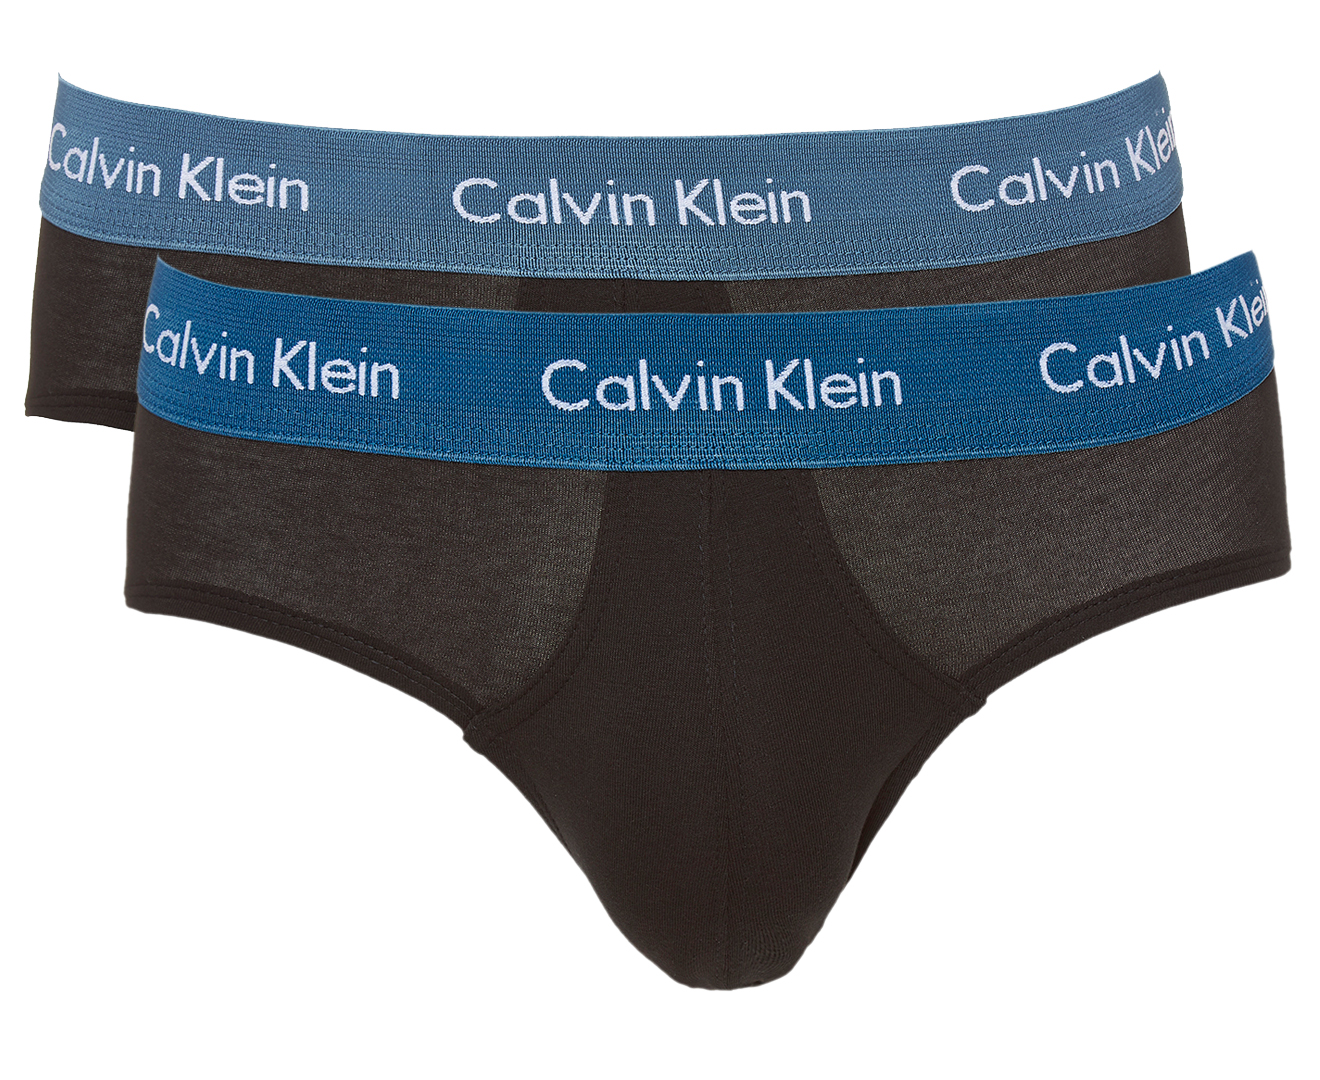 Calvin Klein Men's Cotton Stretch Hipster Briefs 5-Pack - Black | Catch ...